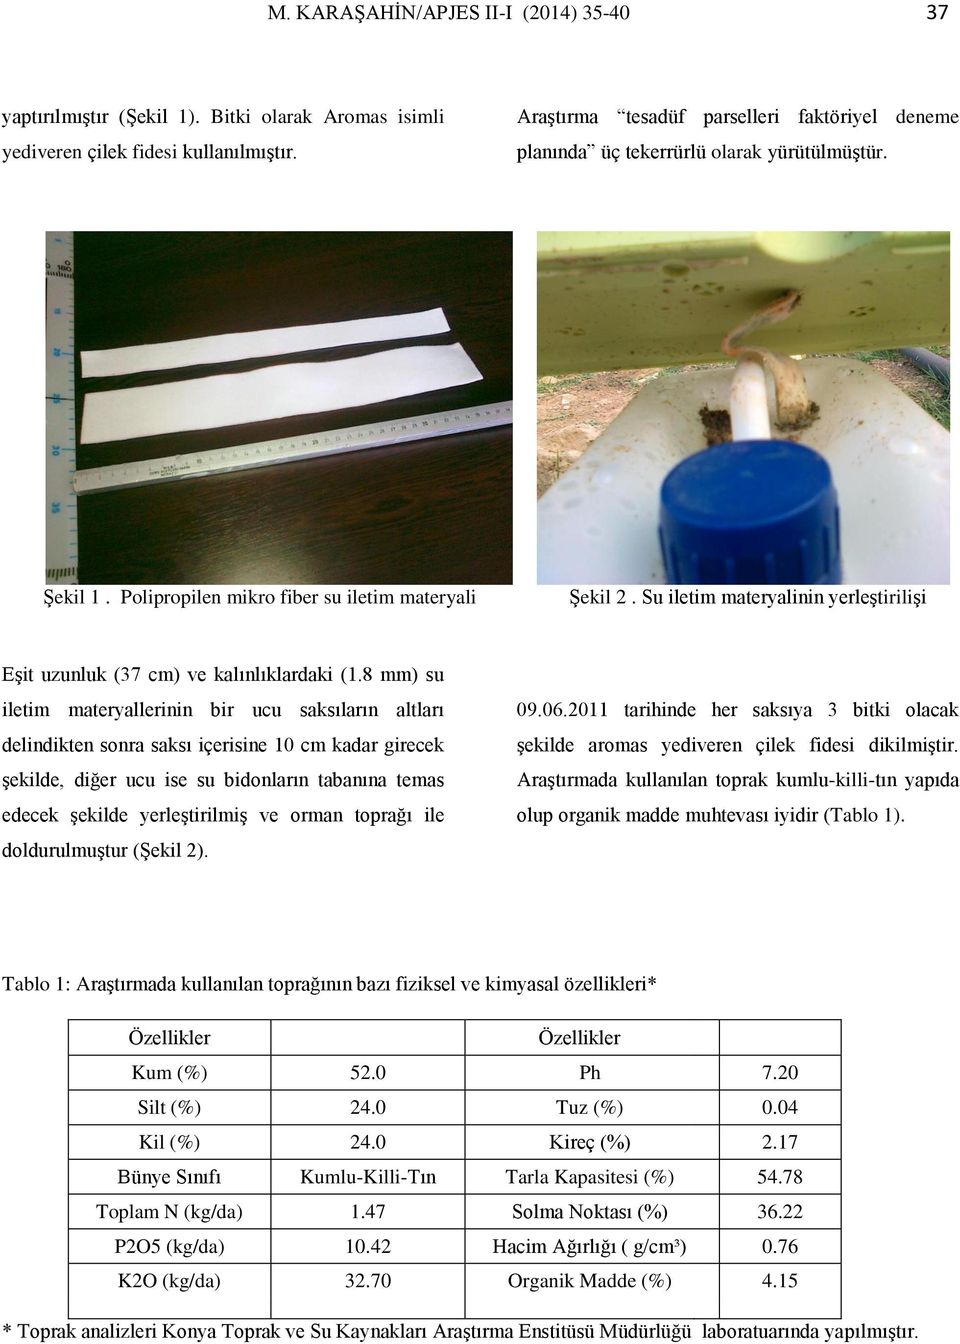 Su iletim materyalinin yerleştirilişi Eşit uzunluk (37 cm) ve kalınlıklardaki (1.